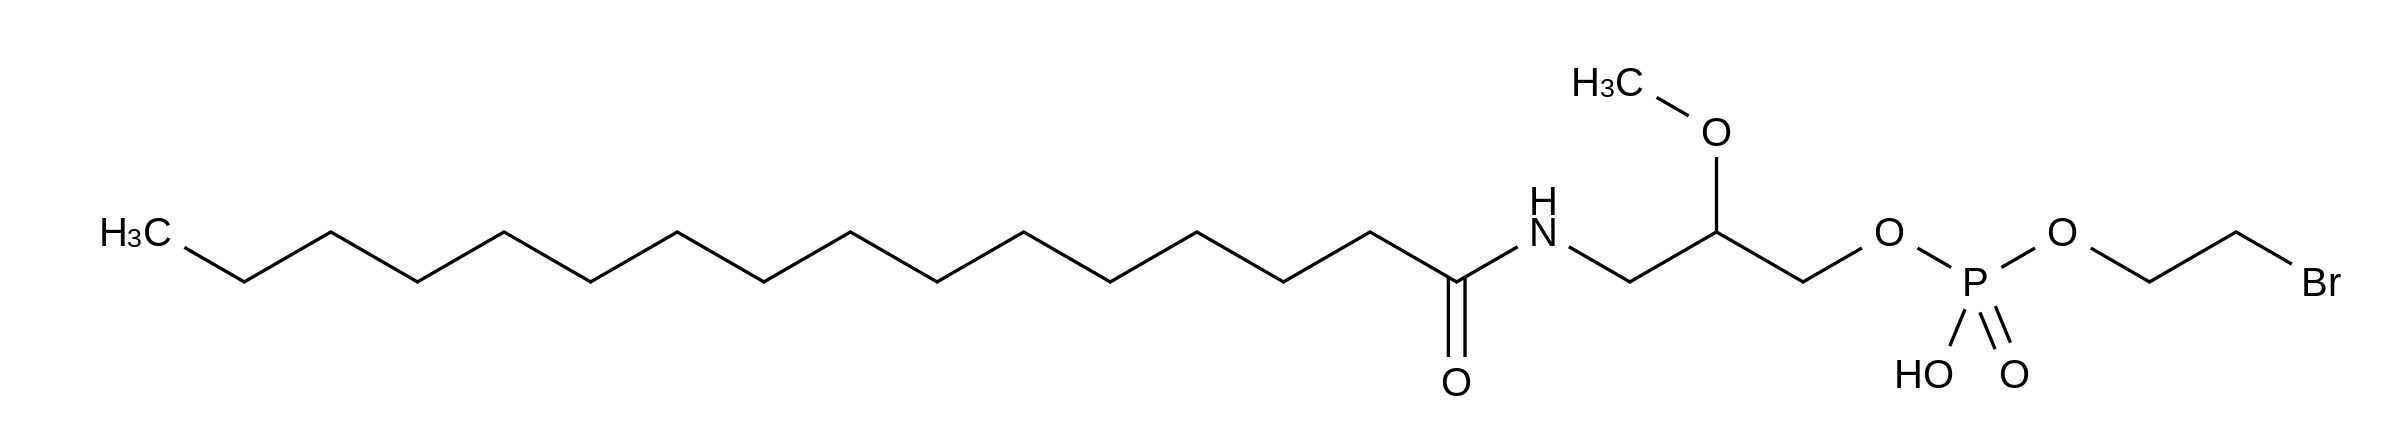 rac-3-Hexadecanamido-2-methoxy-1-(2-bromoethoxyphosphoryl)propanol